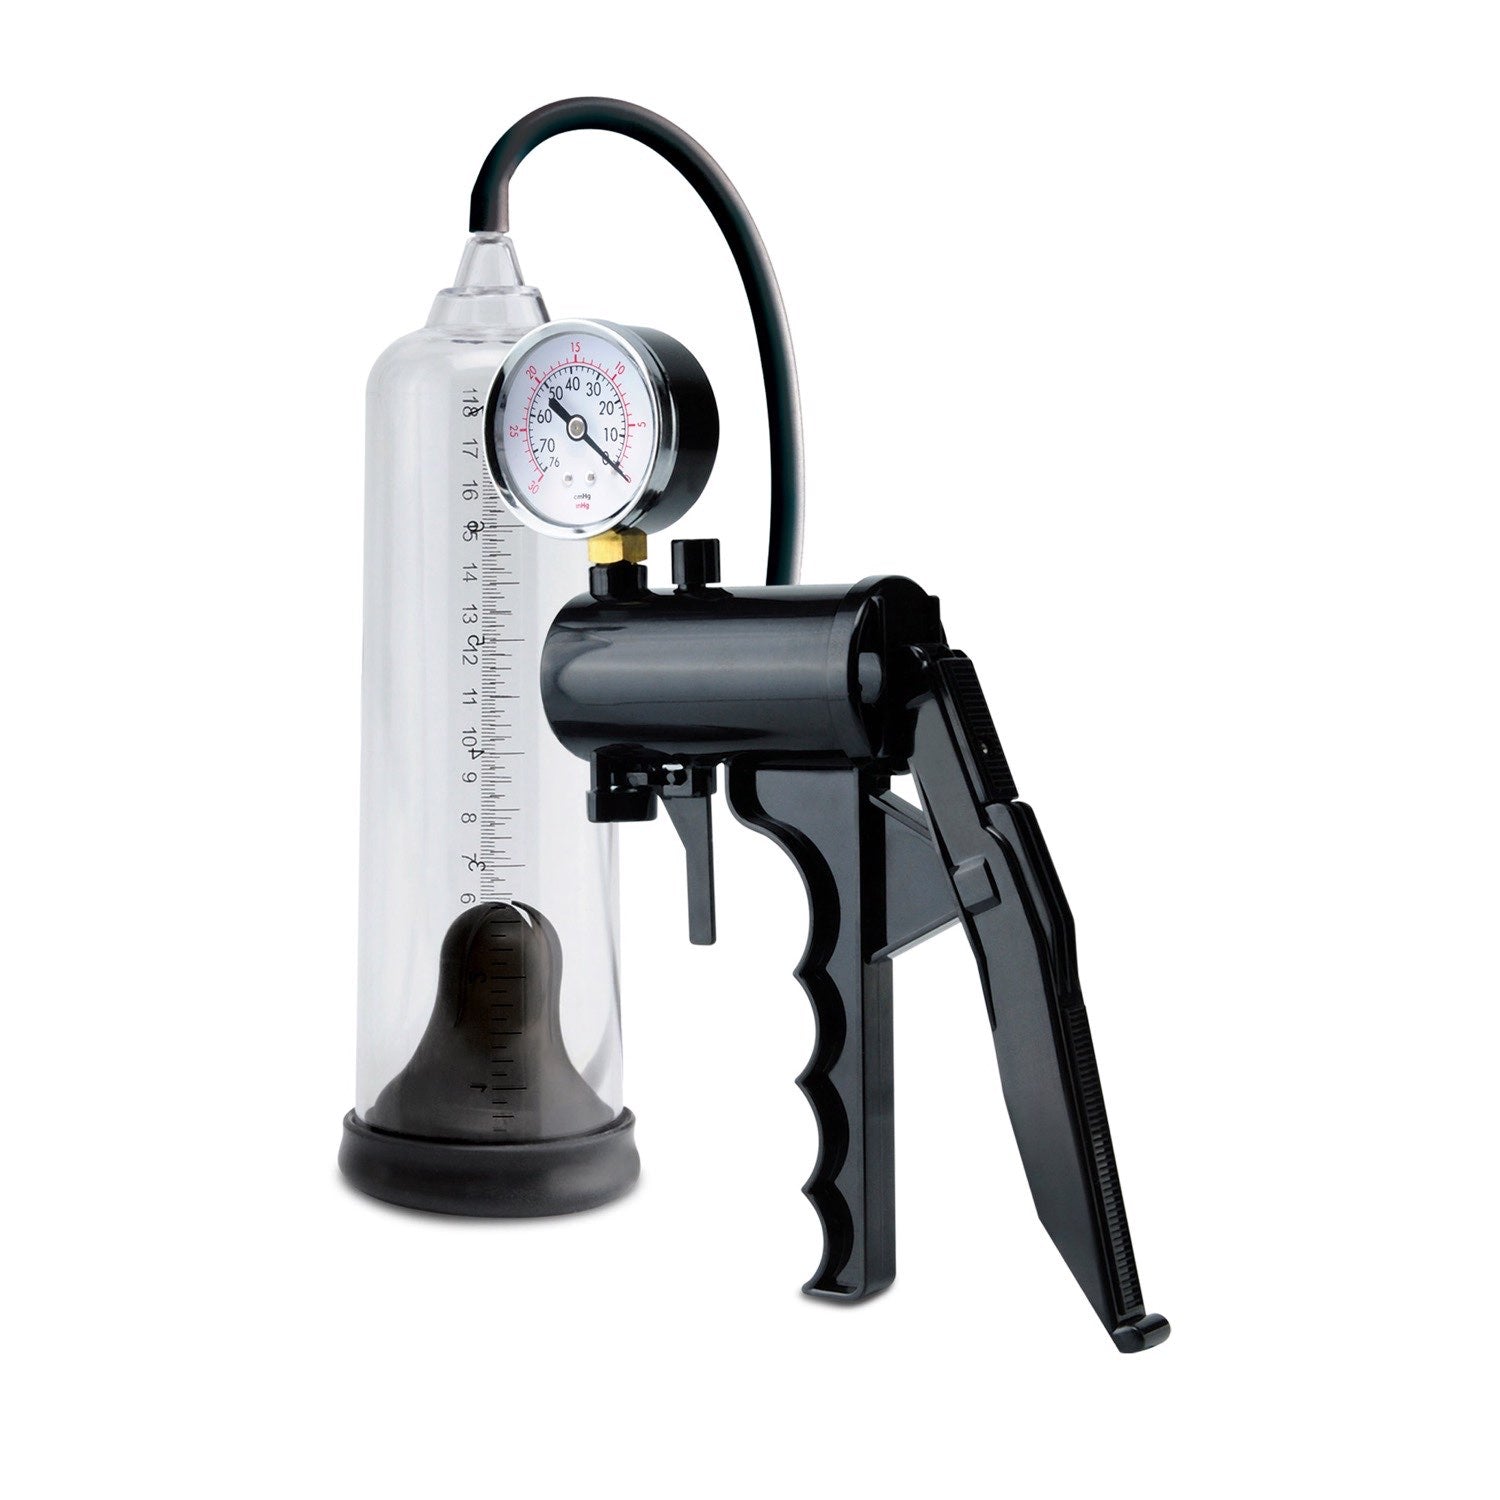 泵沃克斯 最高精度动力泵 - 带计量表的透明/黑色阴茎泵 by Pipedream